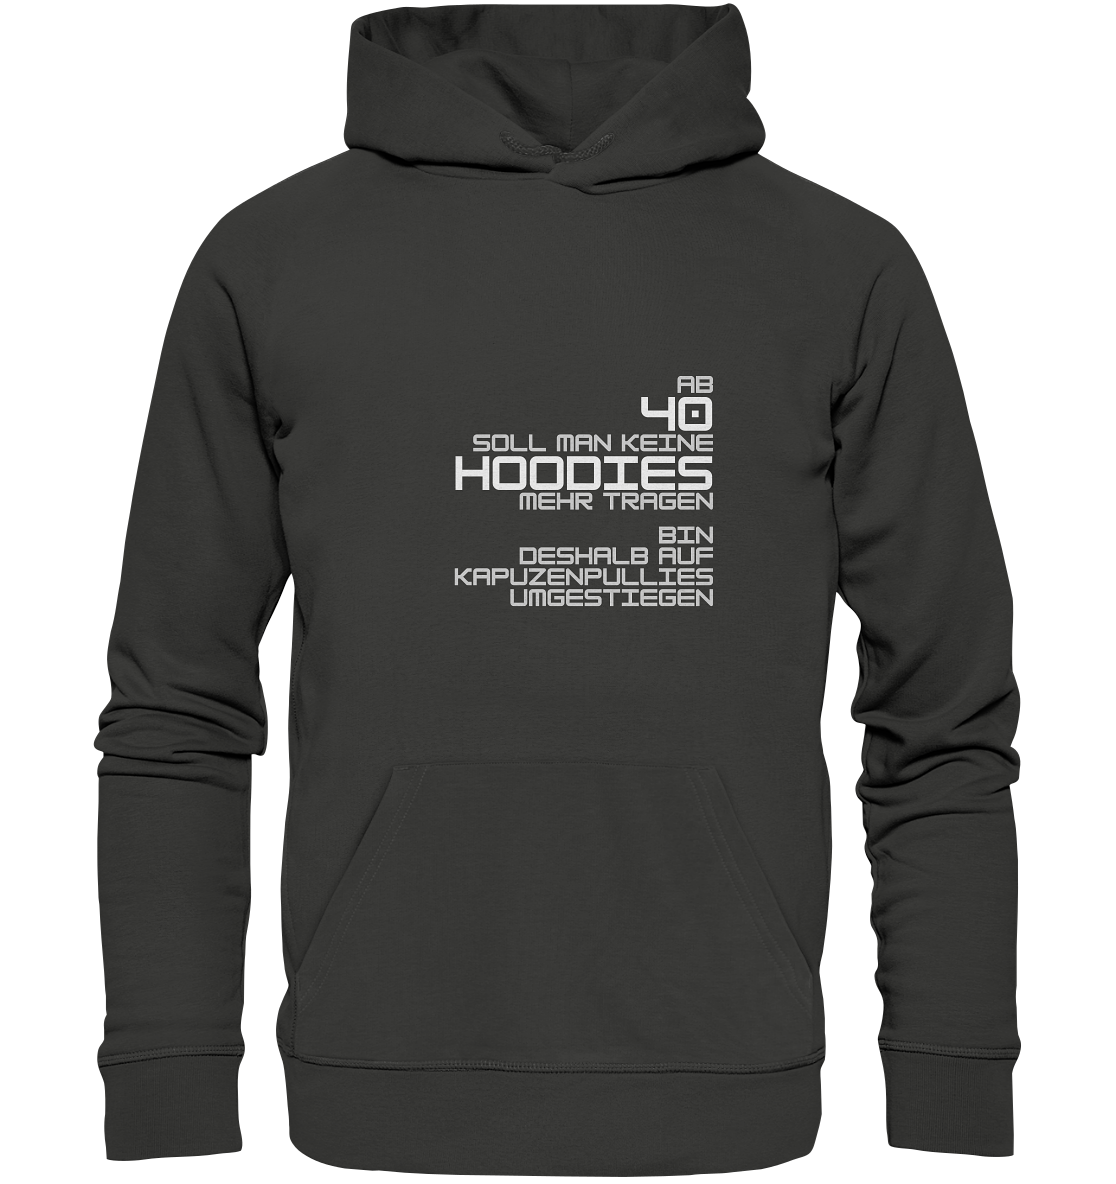 Hoodie für Damen+Herren, Spruch vorn: "Ab 40 soll man keine Hoodies mehr tragen." dunkel grau